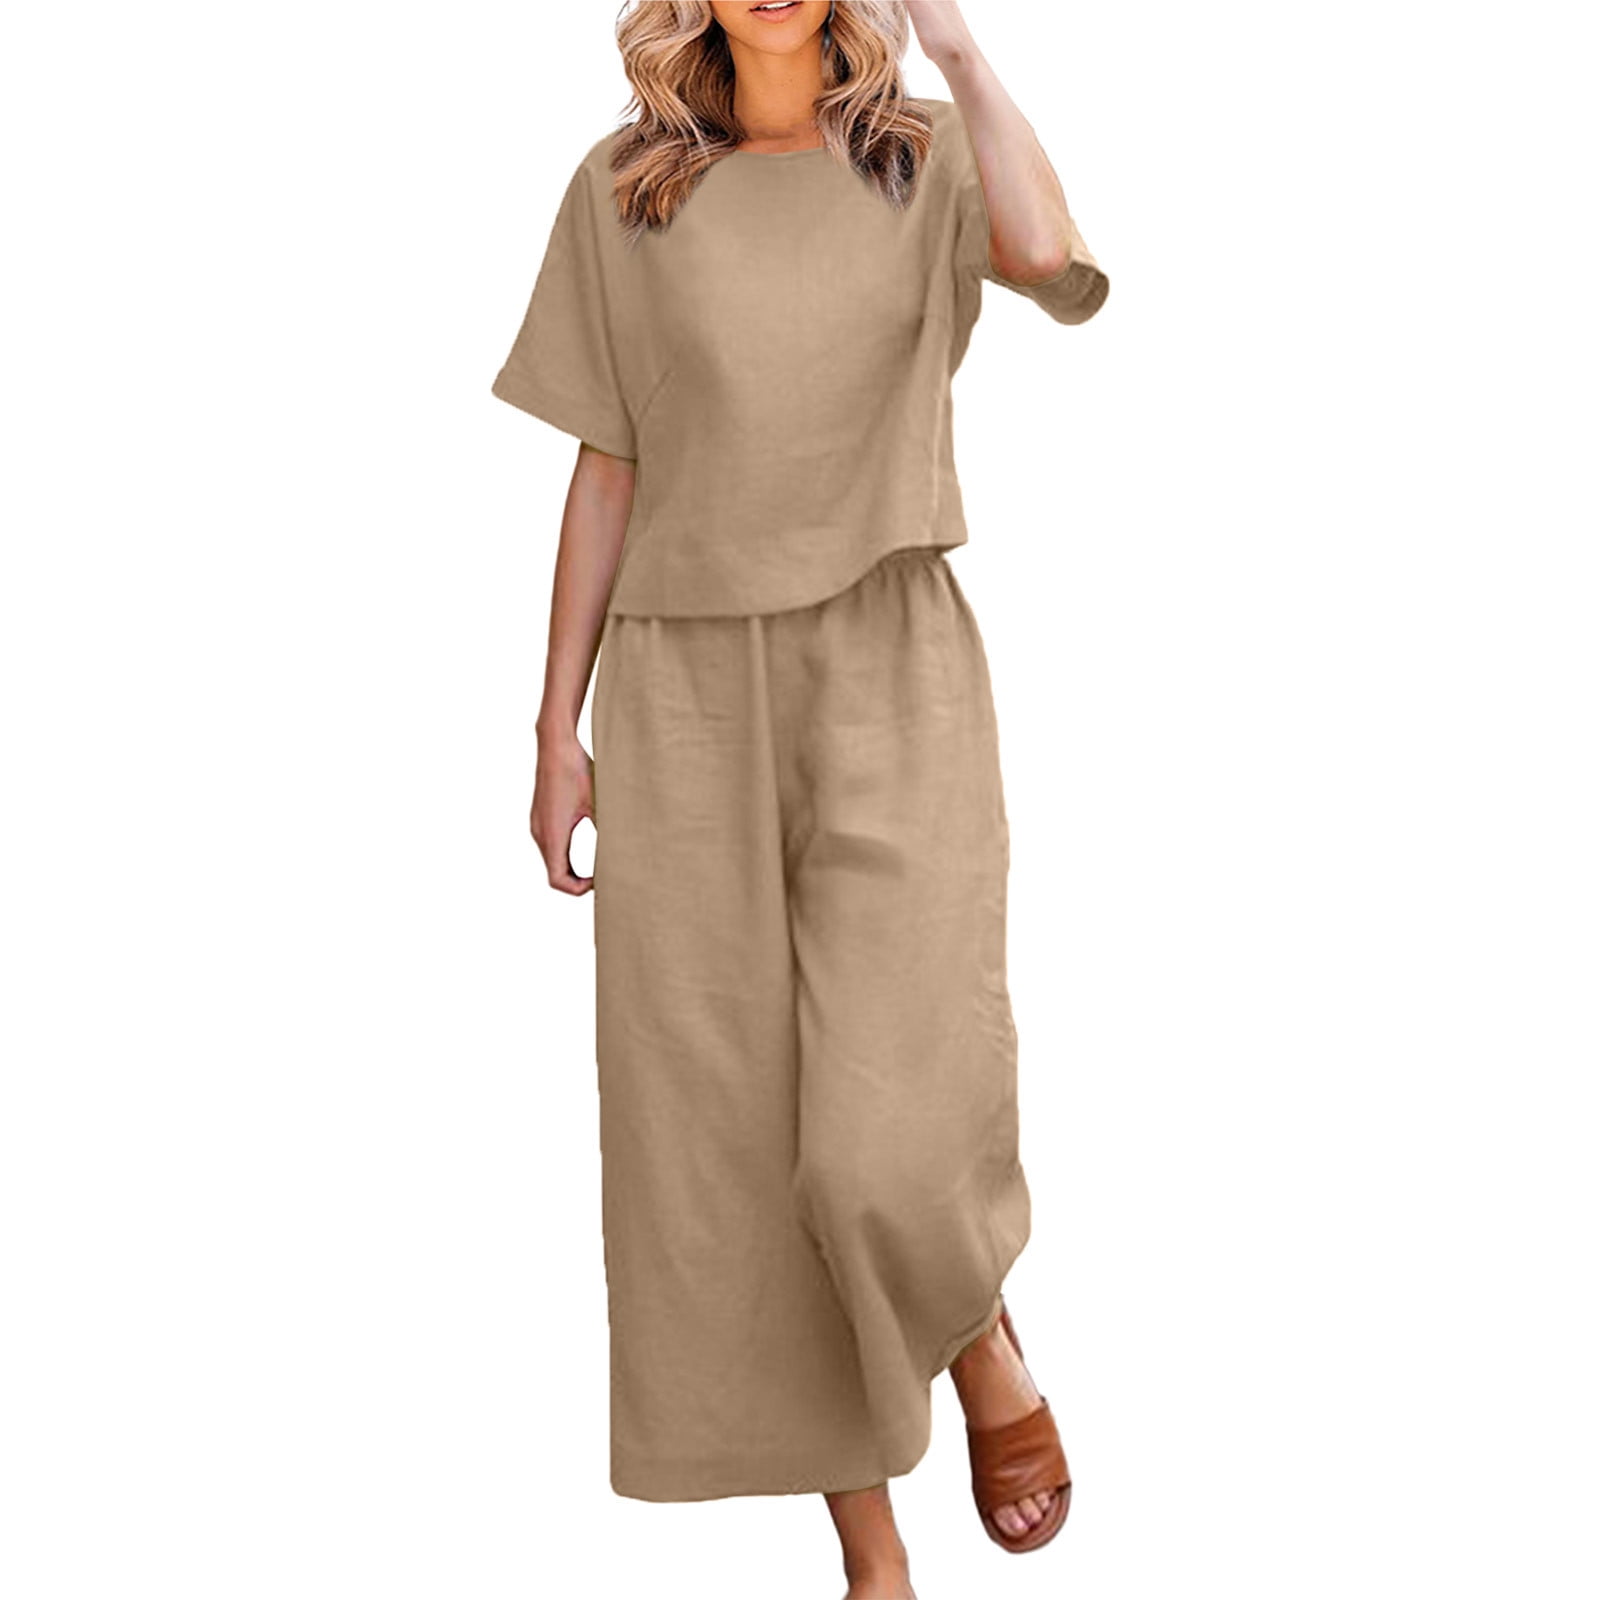 TQWQT Women Linen Sets 2 Piece Summer Outfits Fashion T Shirt Romper  Crewneck Short Sleeve Casual Loose Comfy Long Pants Jumpsuit with Pockets,Khaki  XXXXL 